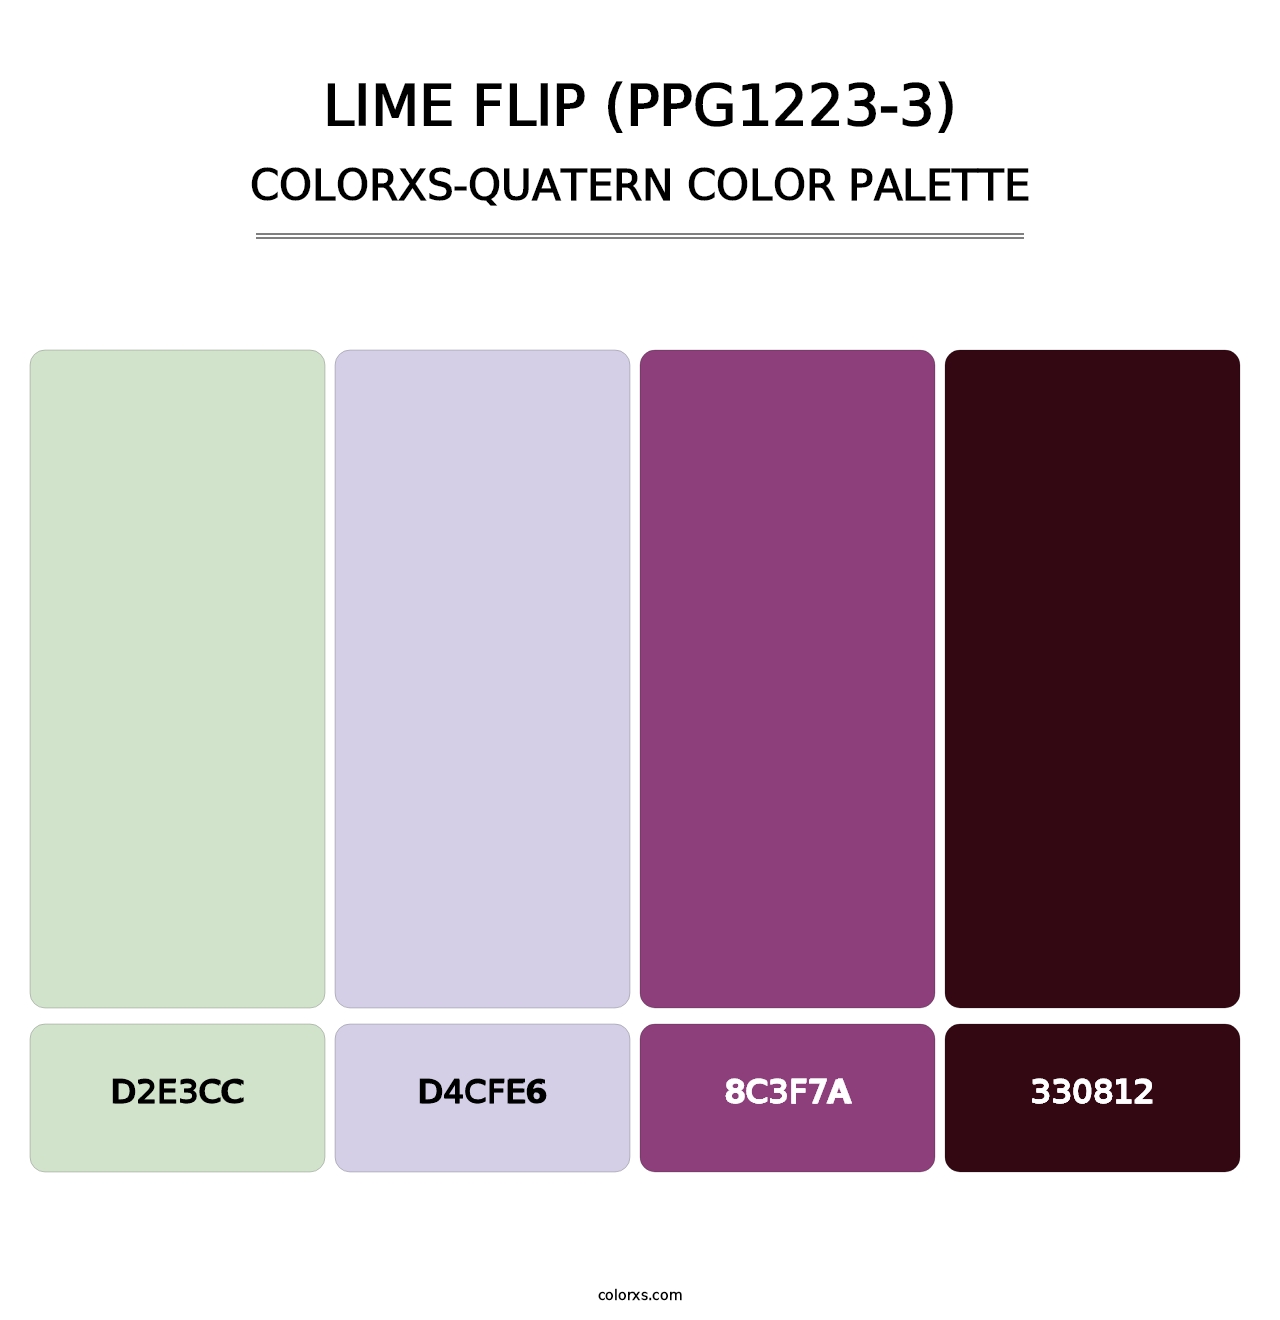 Lime Flip (PPG1223-3) - Colorxs Quatern Palette